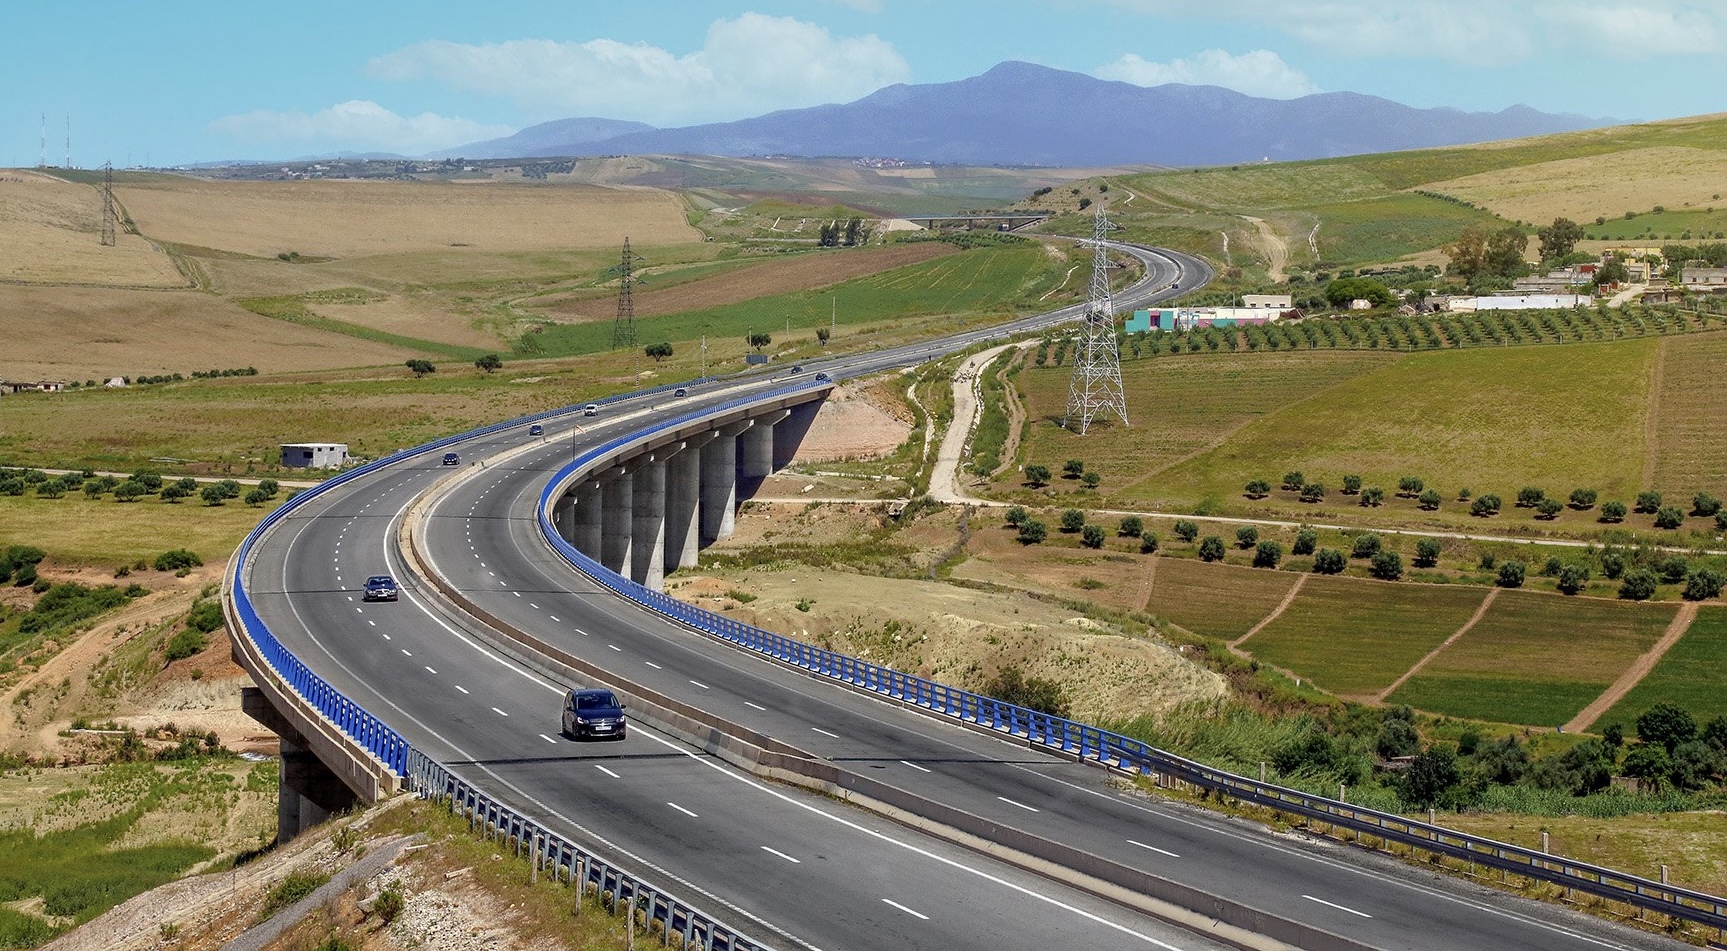 المغرب يرصد 20 مليار درهم لتطوير الطرقات استعدادًا لمونديال 2030